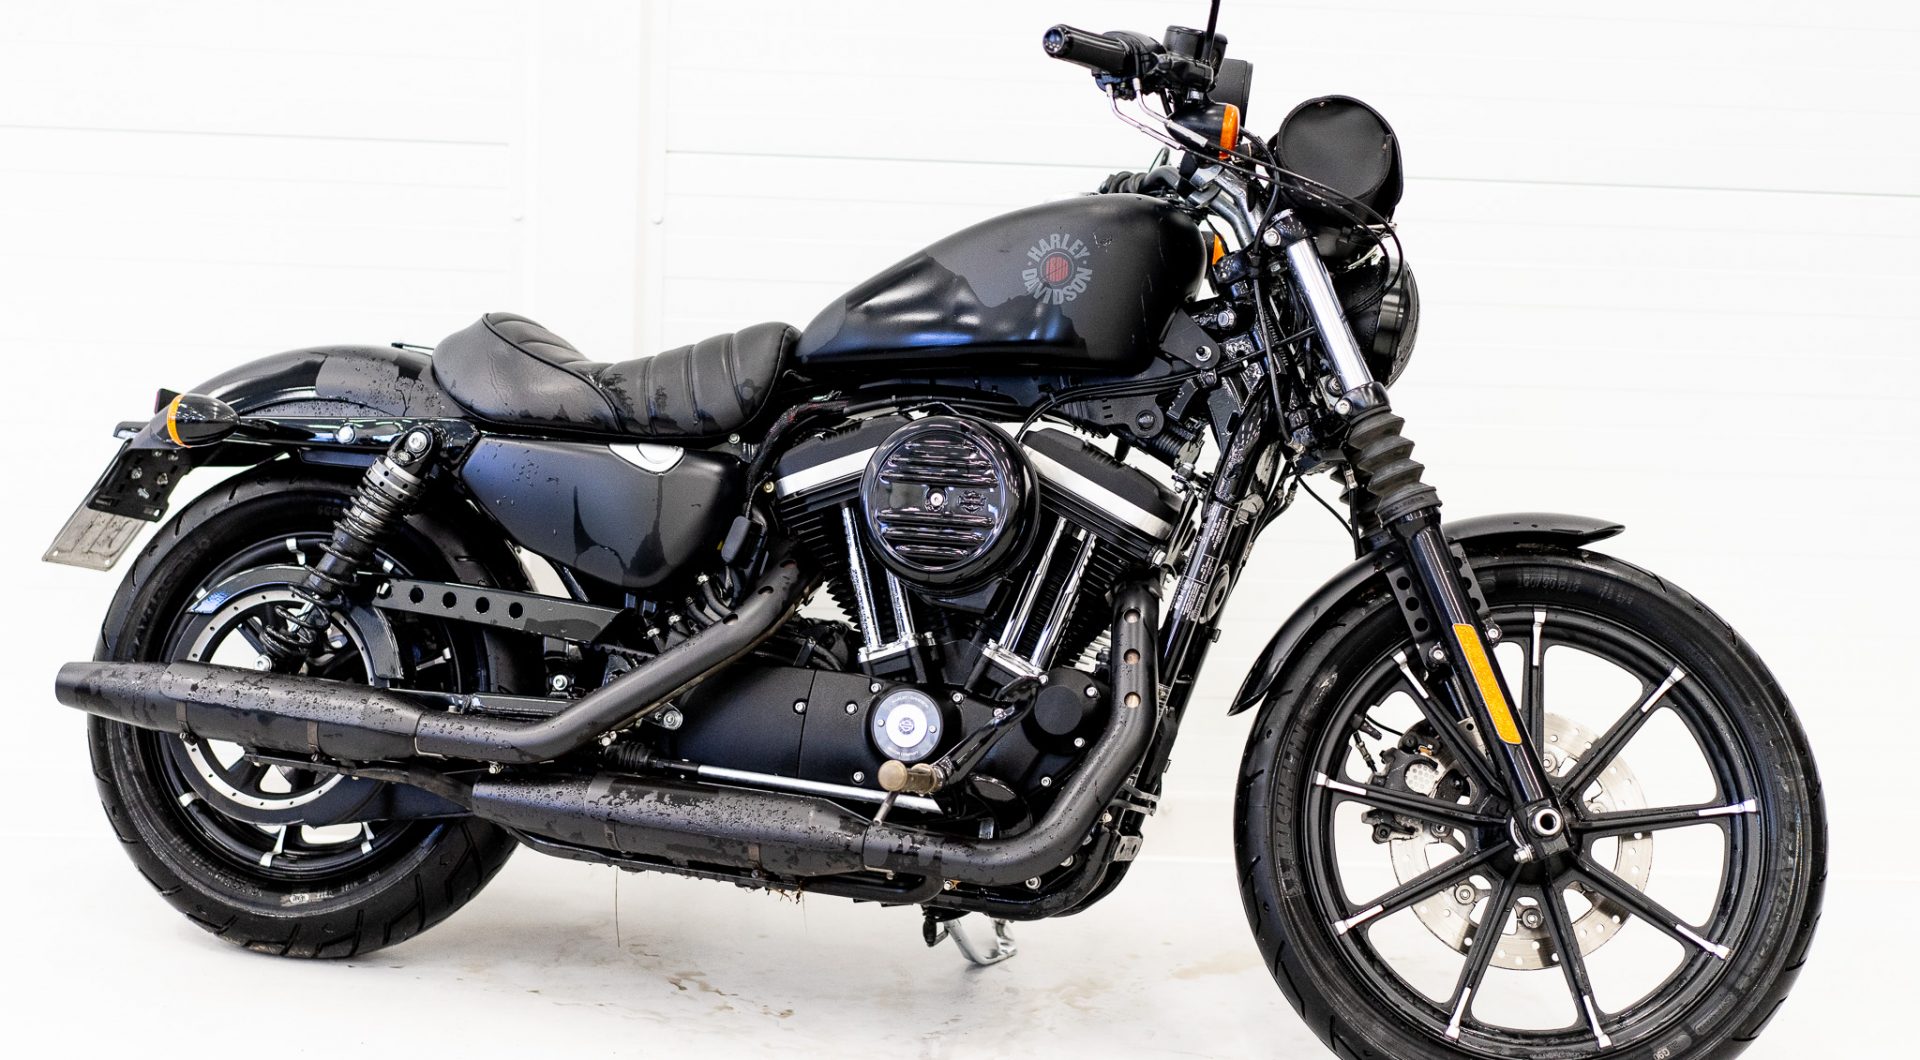 Ostetaanmoottoripyoria.fi sivusto on erikoistunut Harley Davidsonien ostamiseen